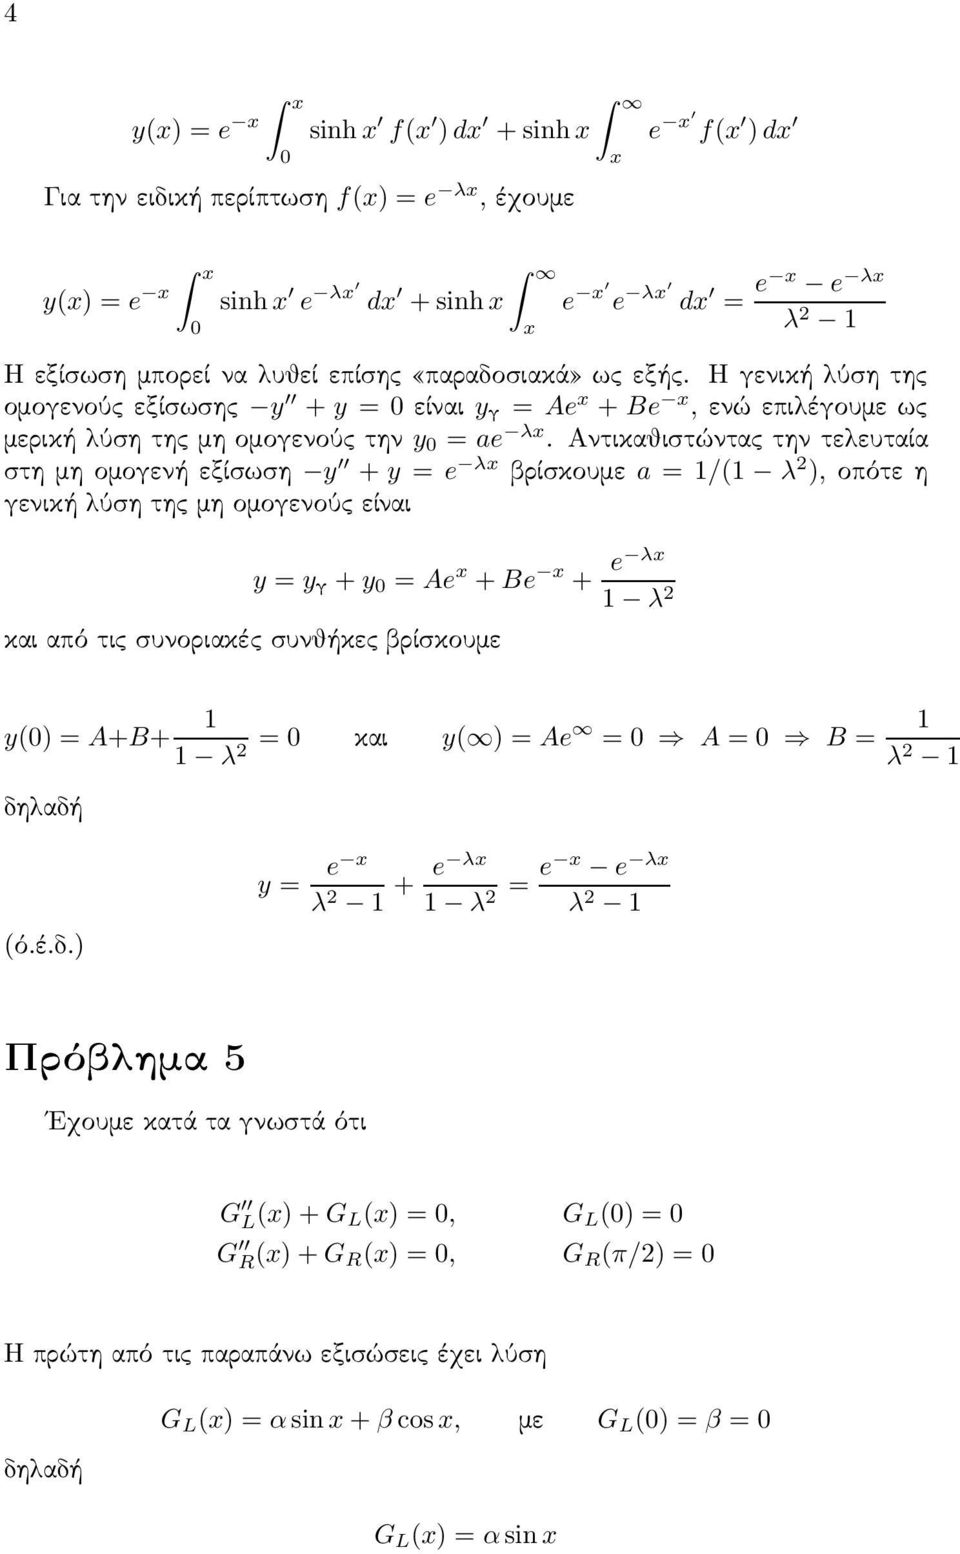 Αντικαθιστώντας την τελευταία στη μη ομογενή εξίσωση y + y = e λ βρίσκουμε a =1/(1 λ ),οπότεη γενική λύση της μη ομογενούς είναι y = y + y = Ae + Be + e λ 1 λ από τις συνοριακές συνθήκες